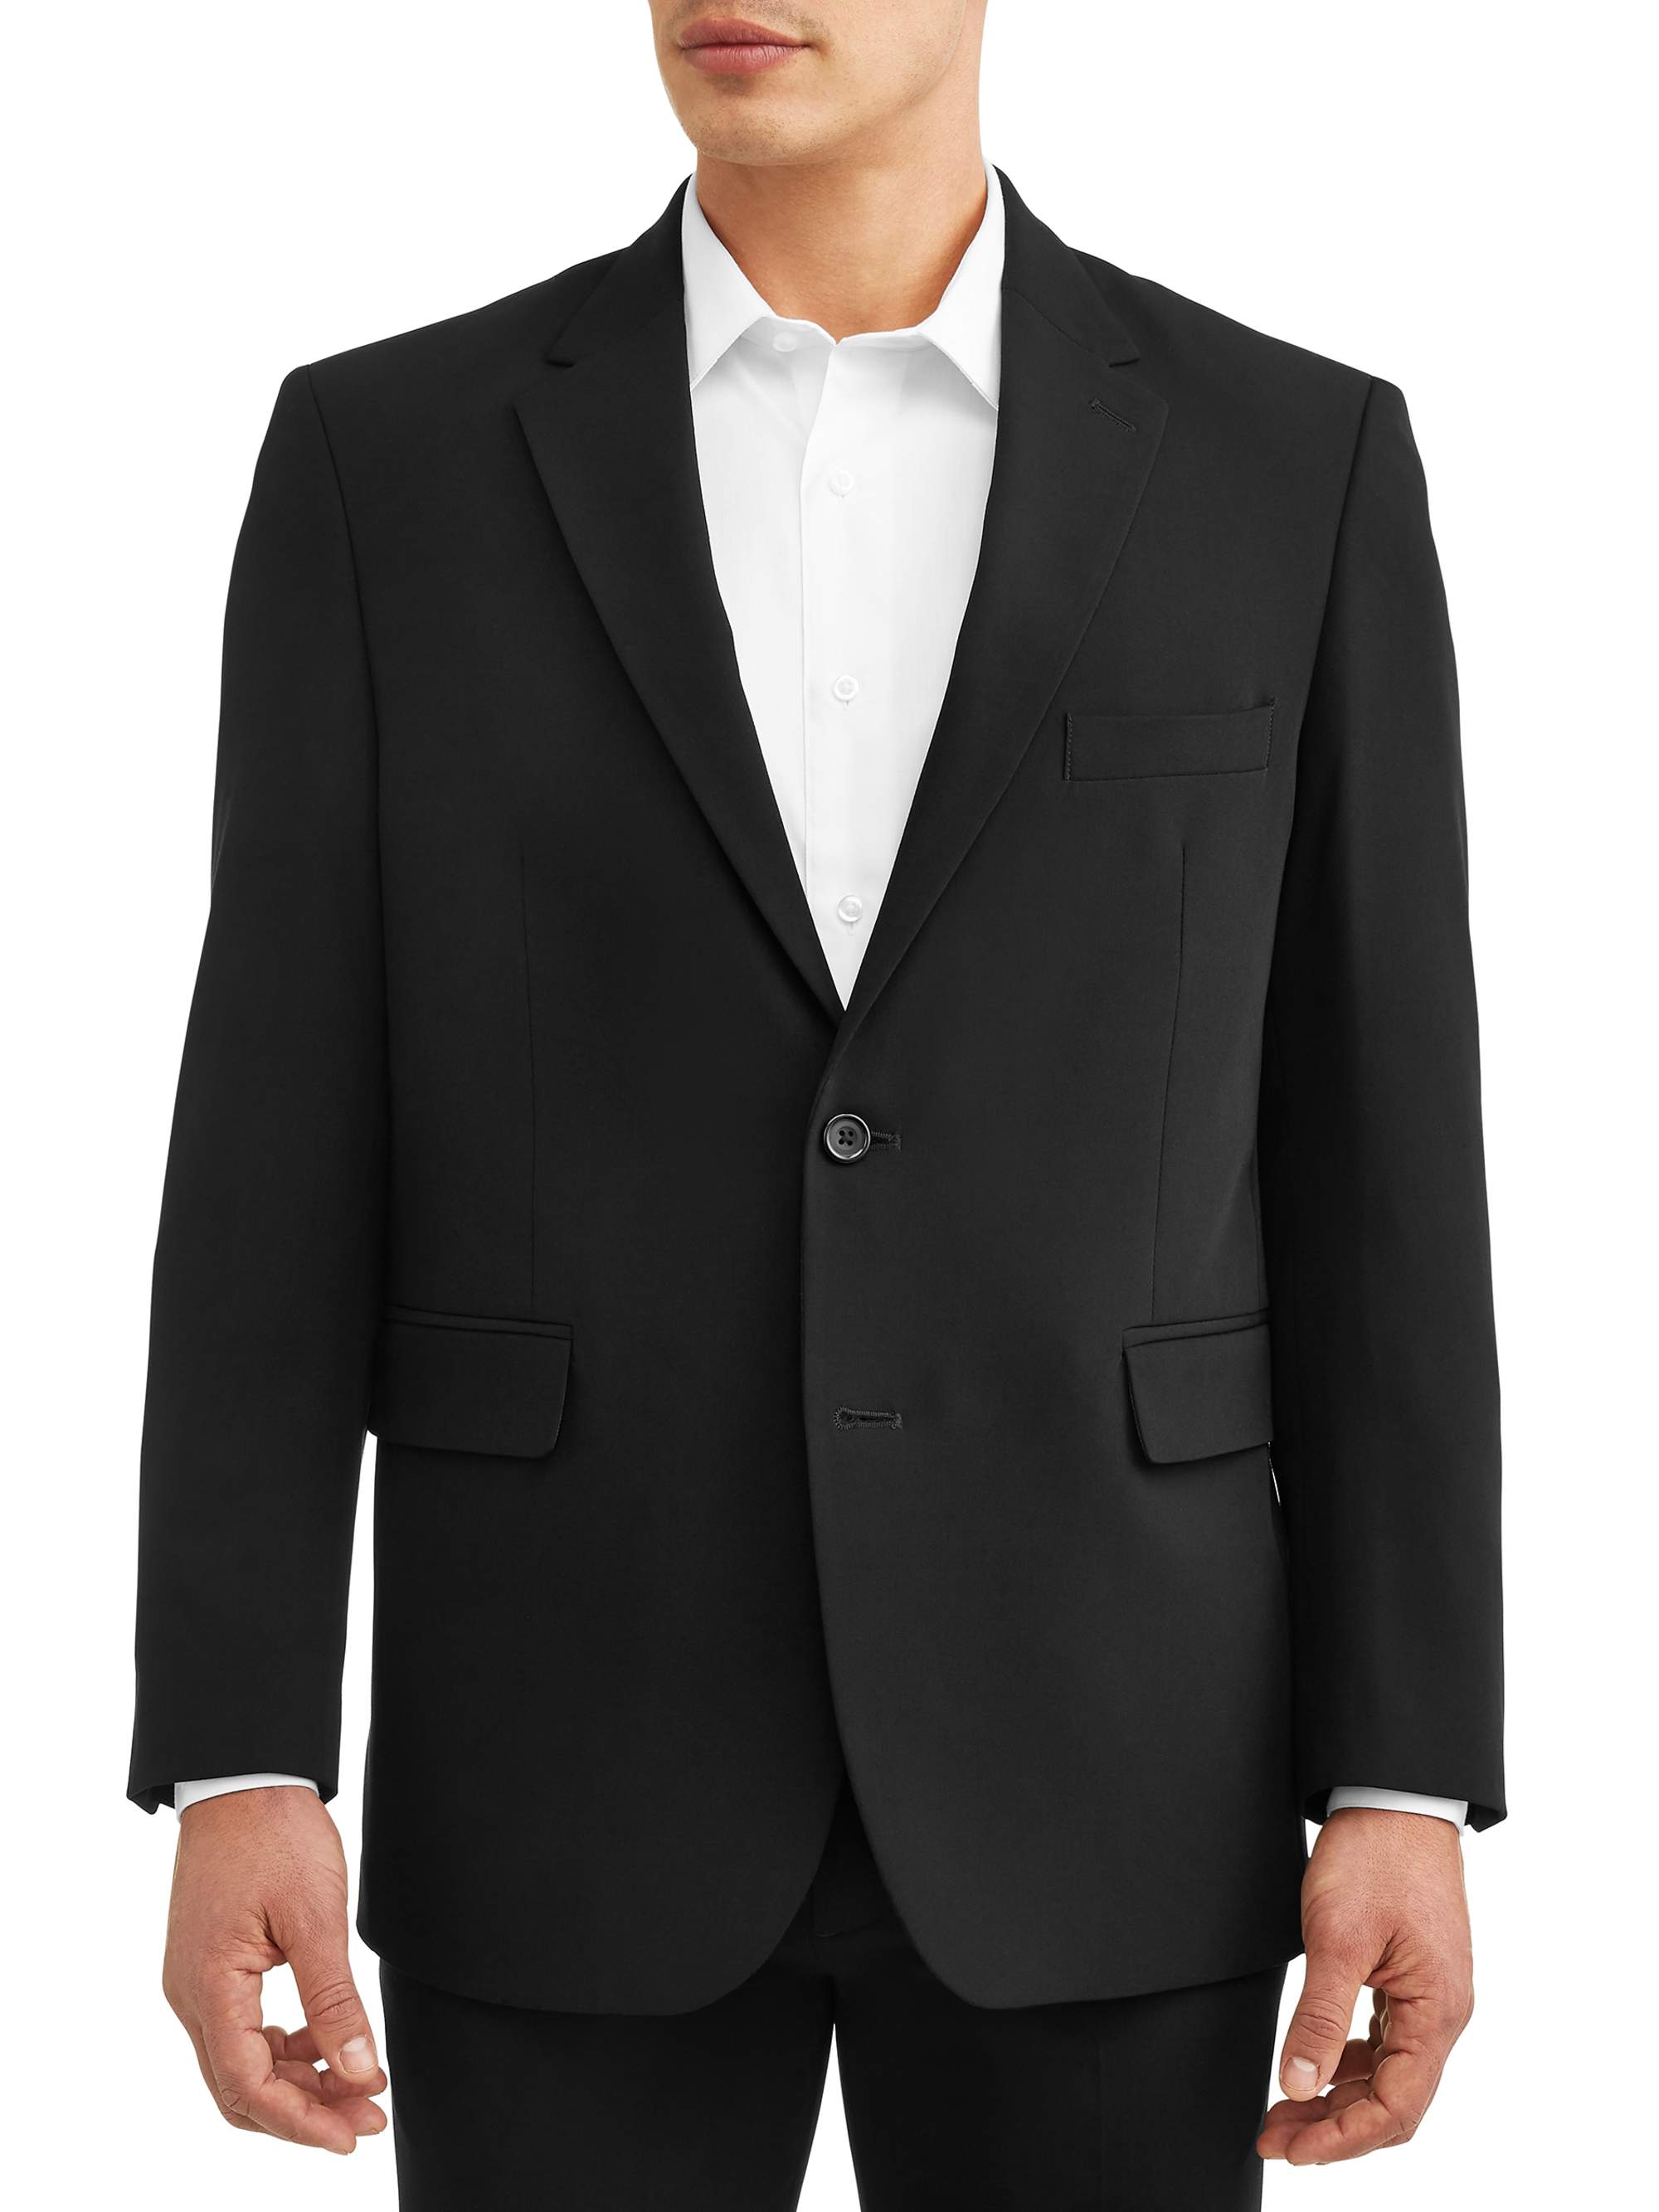 George Men's Premium Comfort Stretch Suit Jacket - image 1 of 5